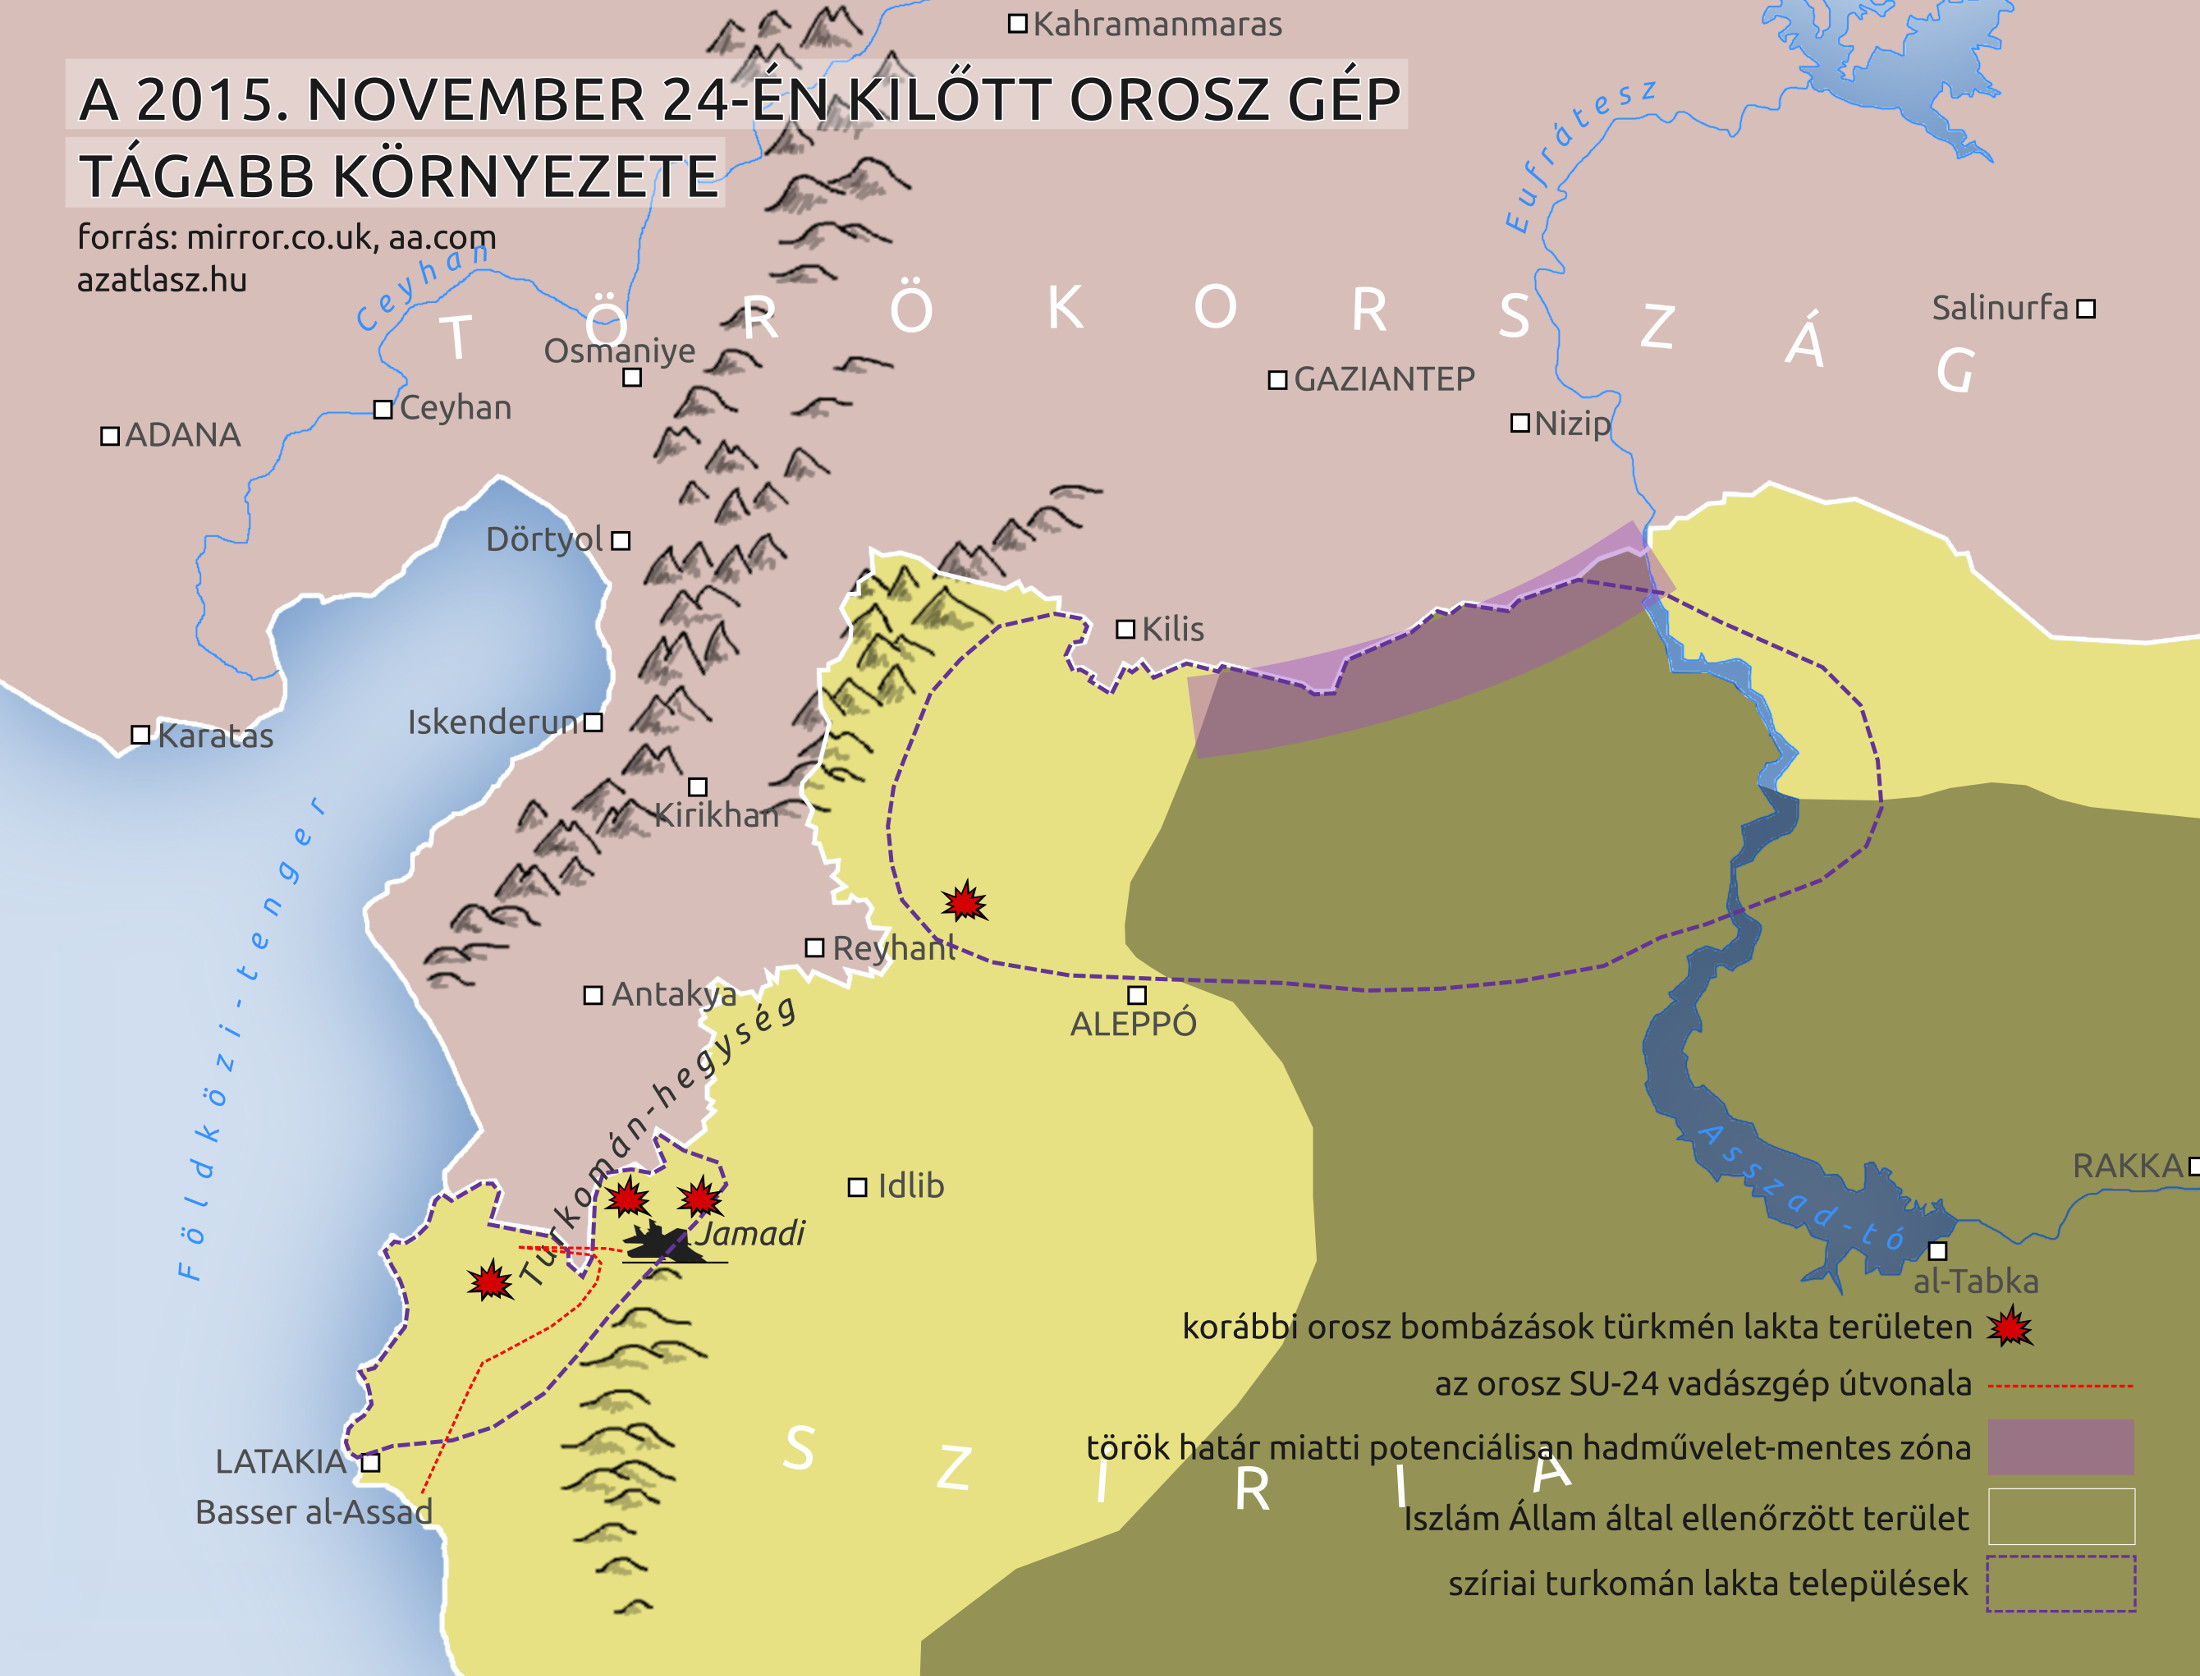 térkép törökország orosz vadászgép lelövése türkmének